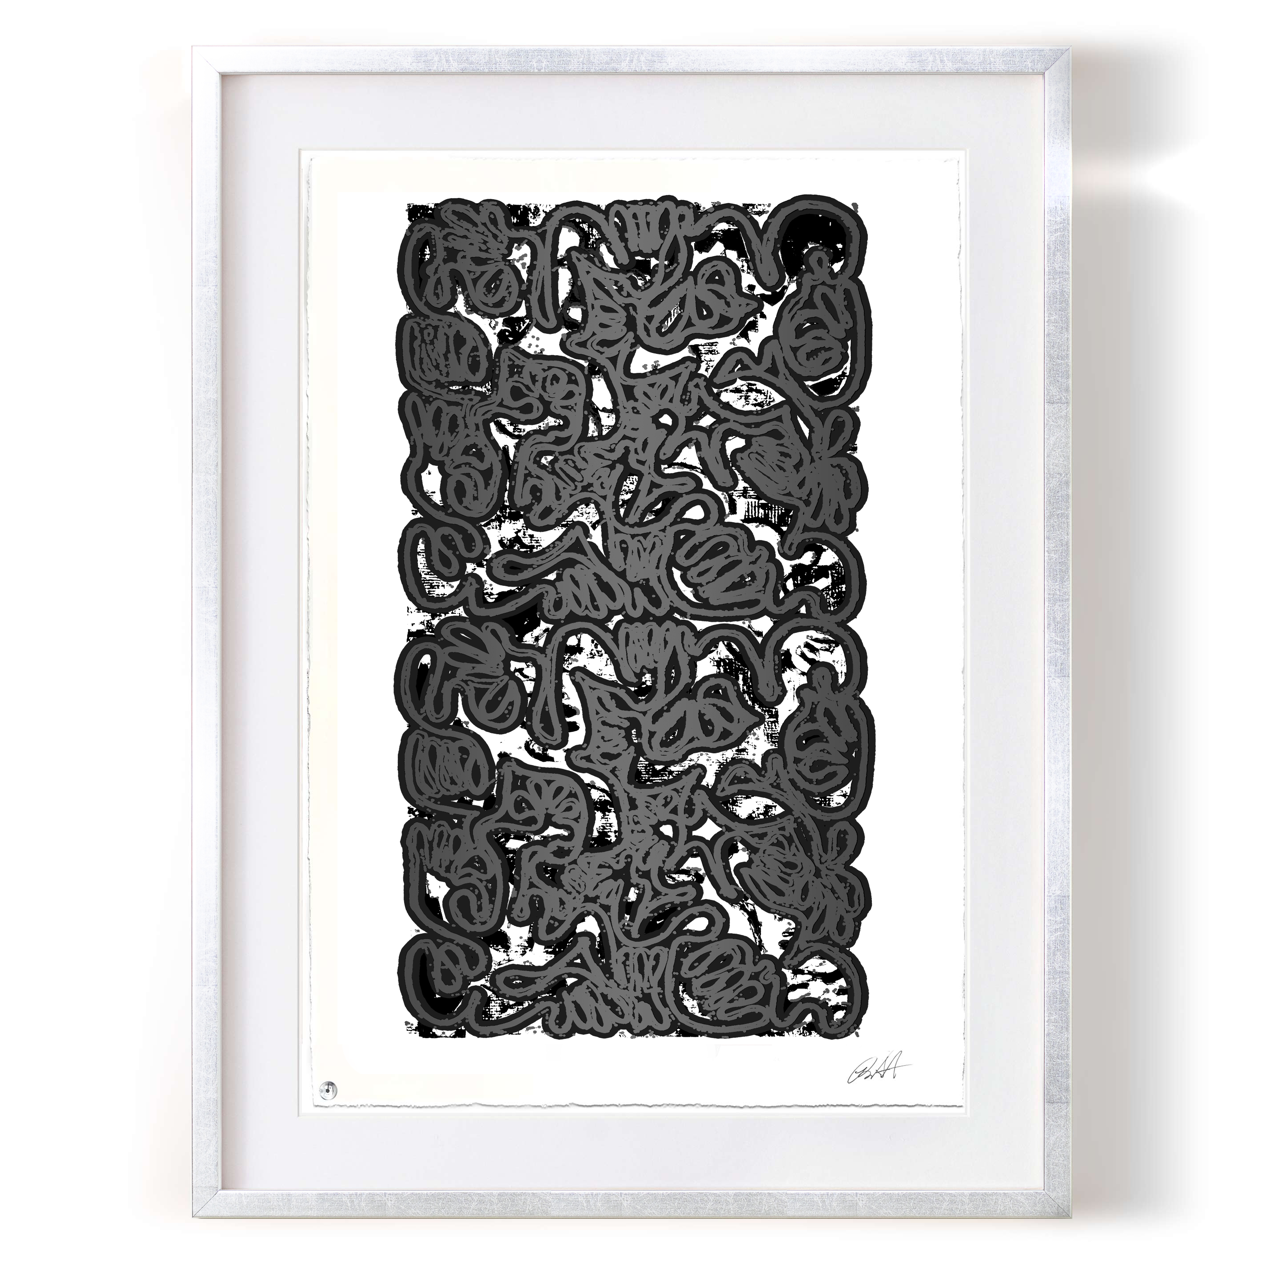 Robert Santoré “PAN AM Paper: 22 x 30in (55.88 x 76.2cm) Framed: 30 x 38in (76.2 x 96.52cm)Silkscreen, high gloss enamel on 100% cotton rag w/NFC chip